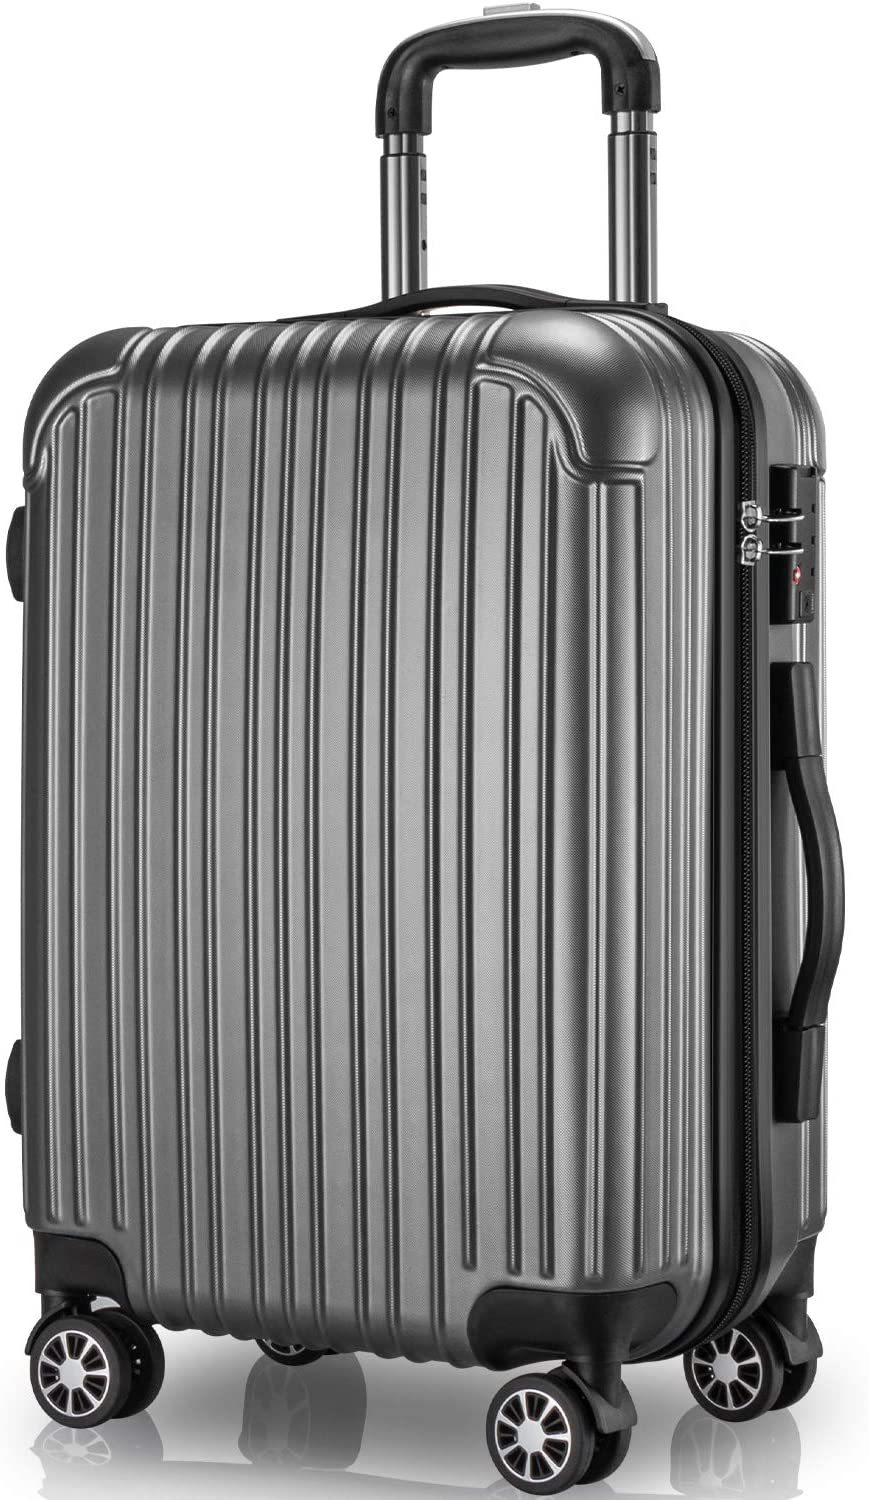 スーツケース 97L Lサイズ 7〜14泊 キャリーケース キャリーバッグ 旅行 ビジネス 出張 カバン バッグ 大型 軽量 おしゃれ 静音 ファスナー